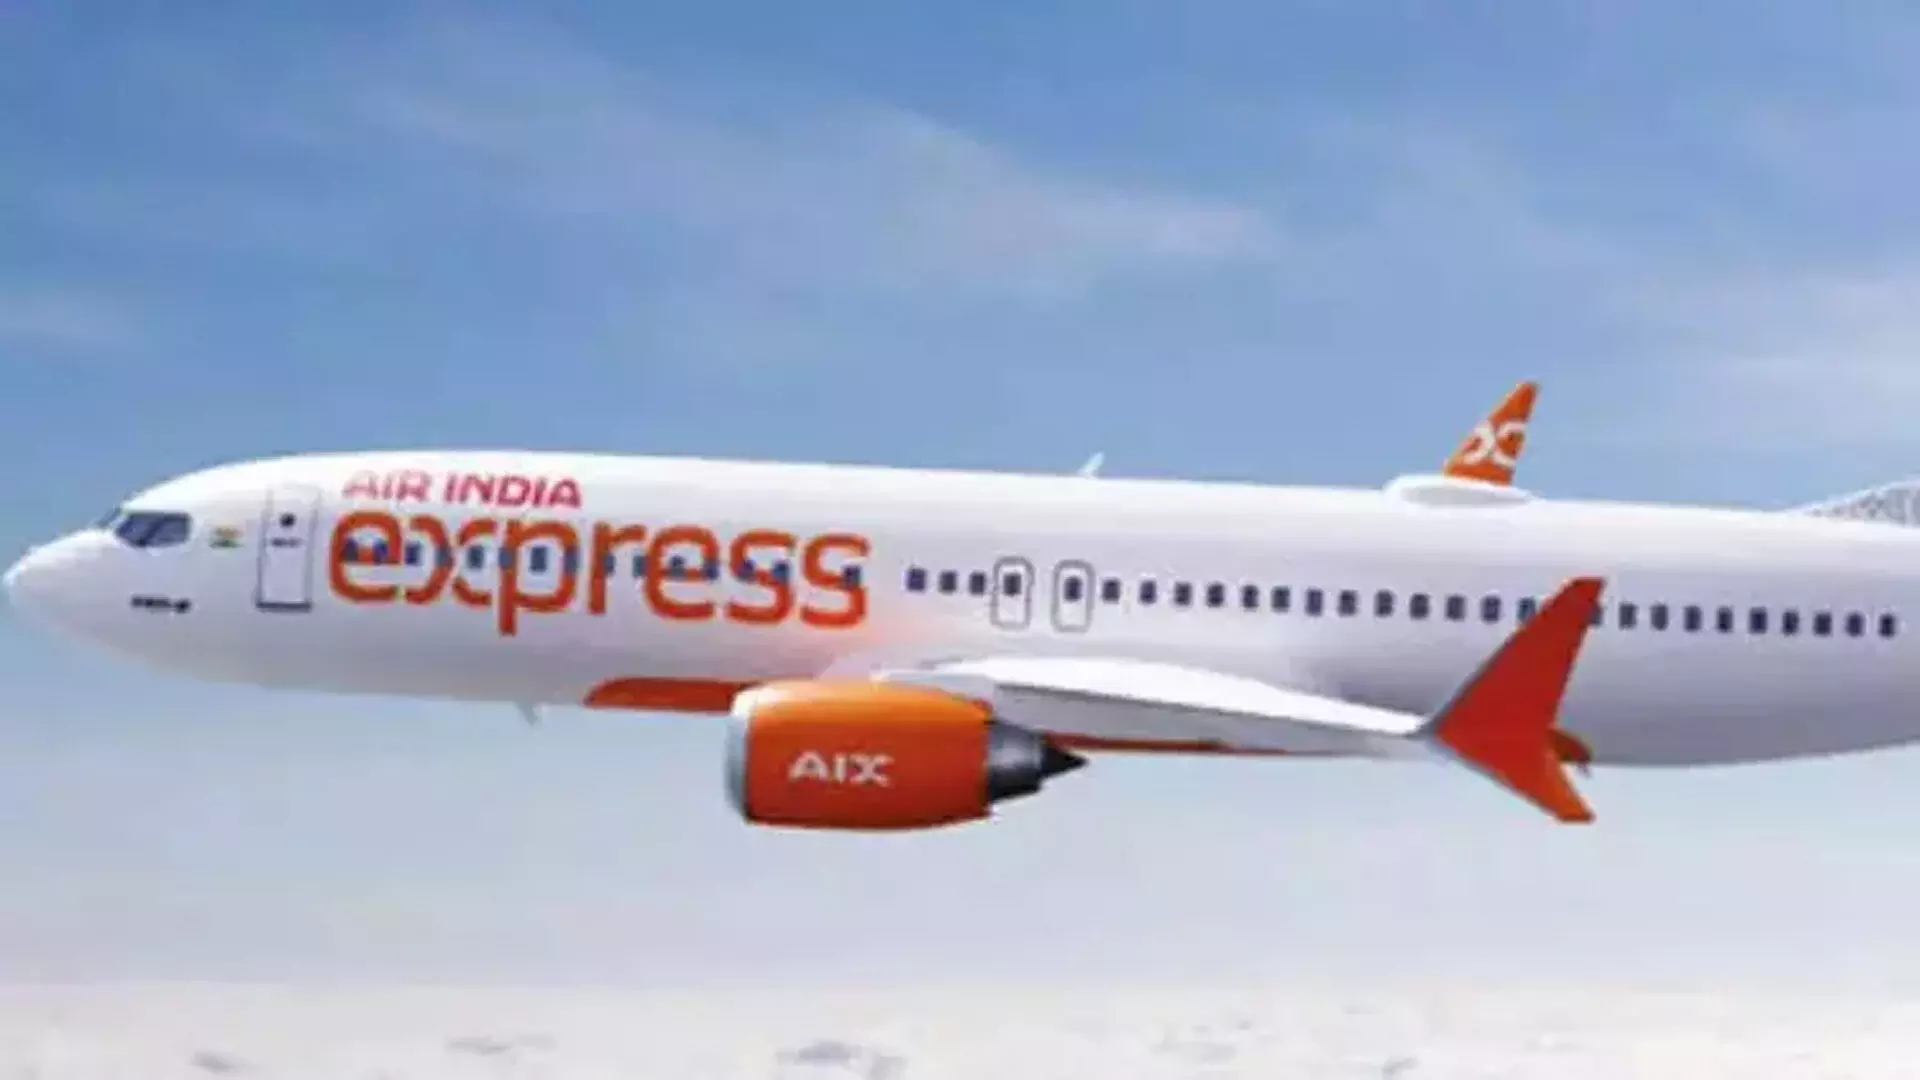 Air India एक्सप्रेस चेन्नई से ढाका के लिए सीधी उड़ानें संचालित करेगी